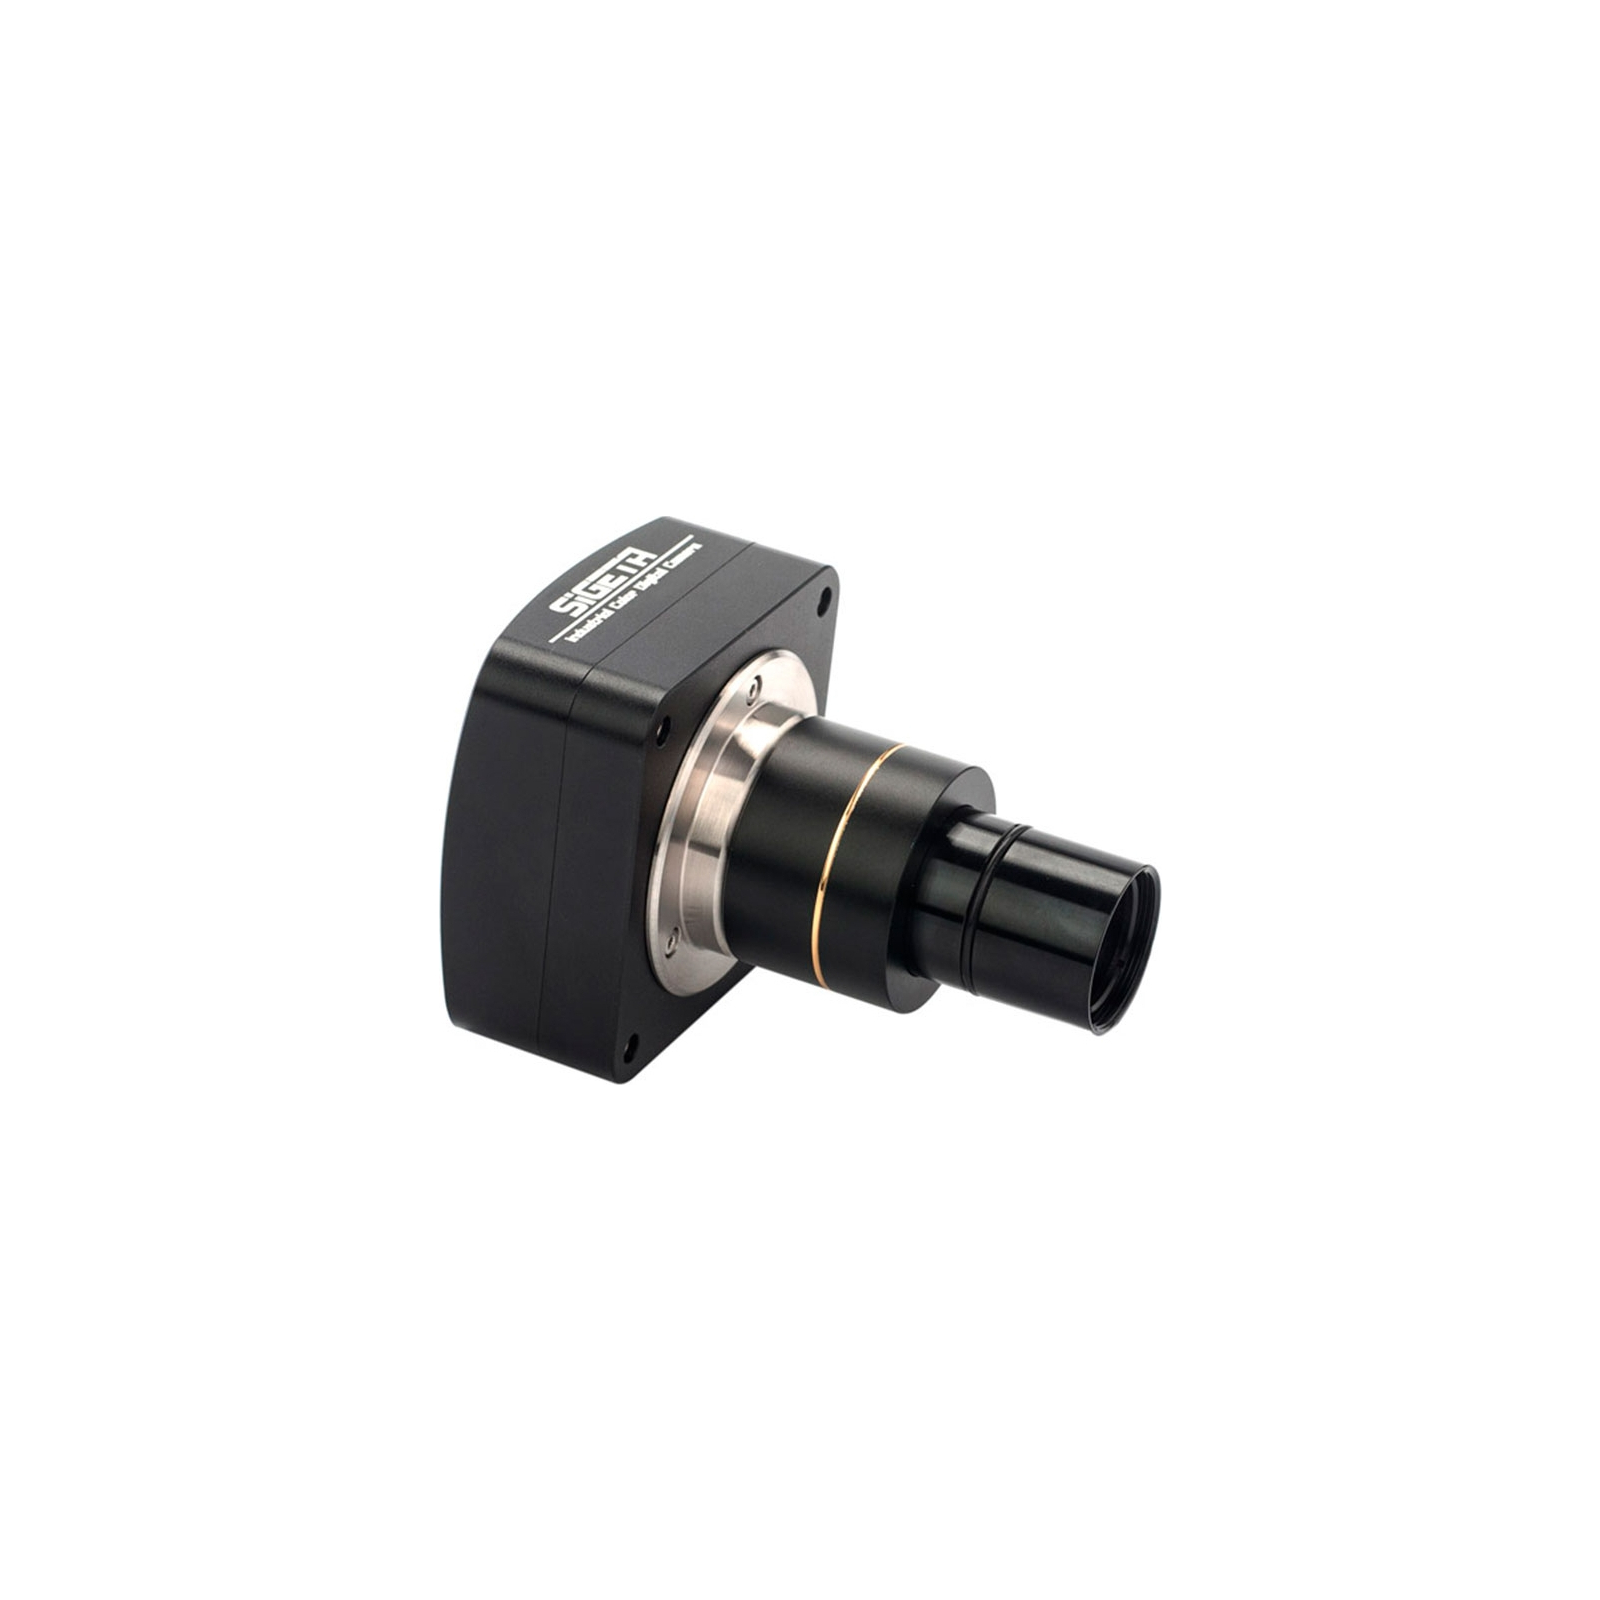 Цифровая камера для микроскопа Sigeta MCMOS 5100 5.1MP USB2.0 (65673) изображение 4